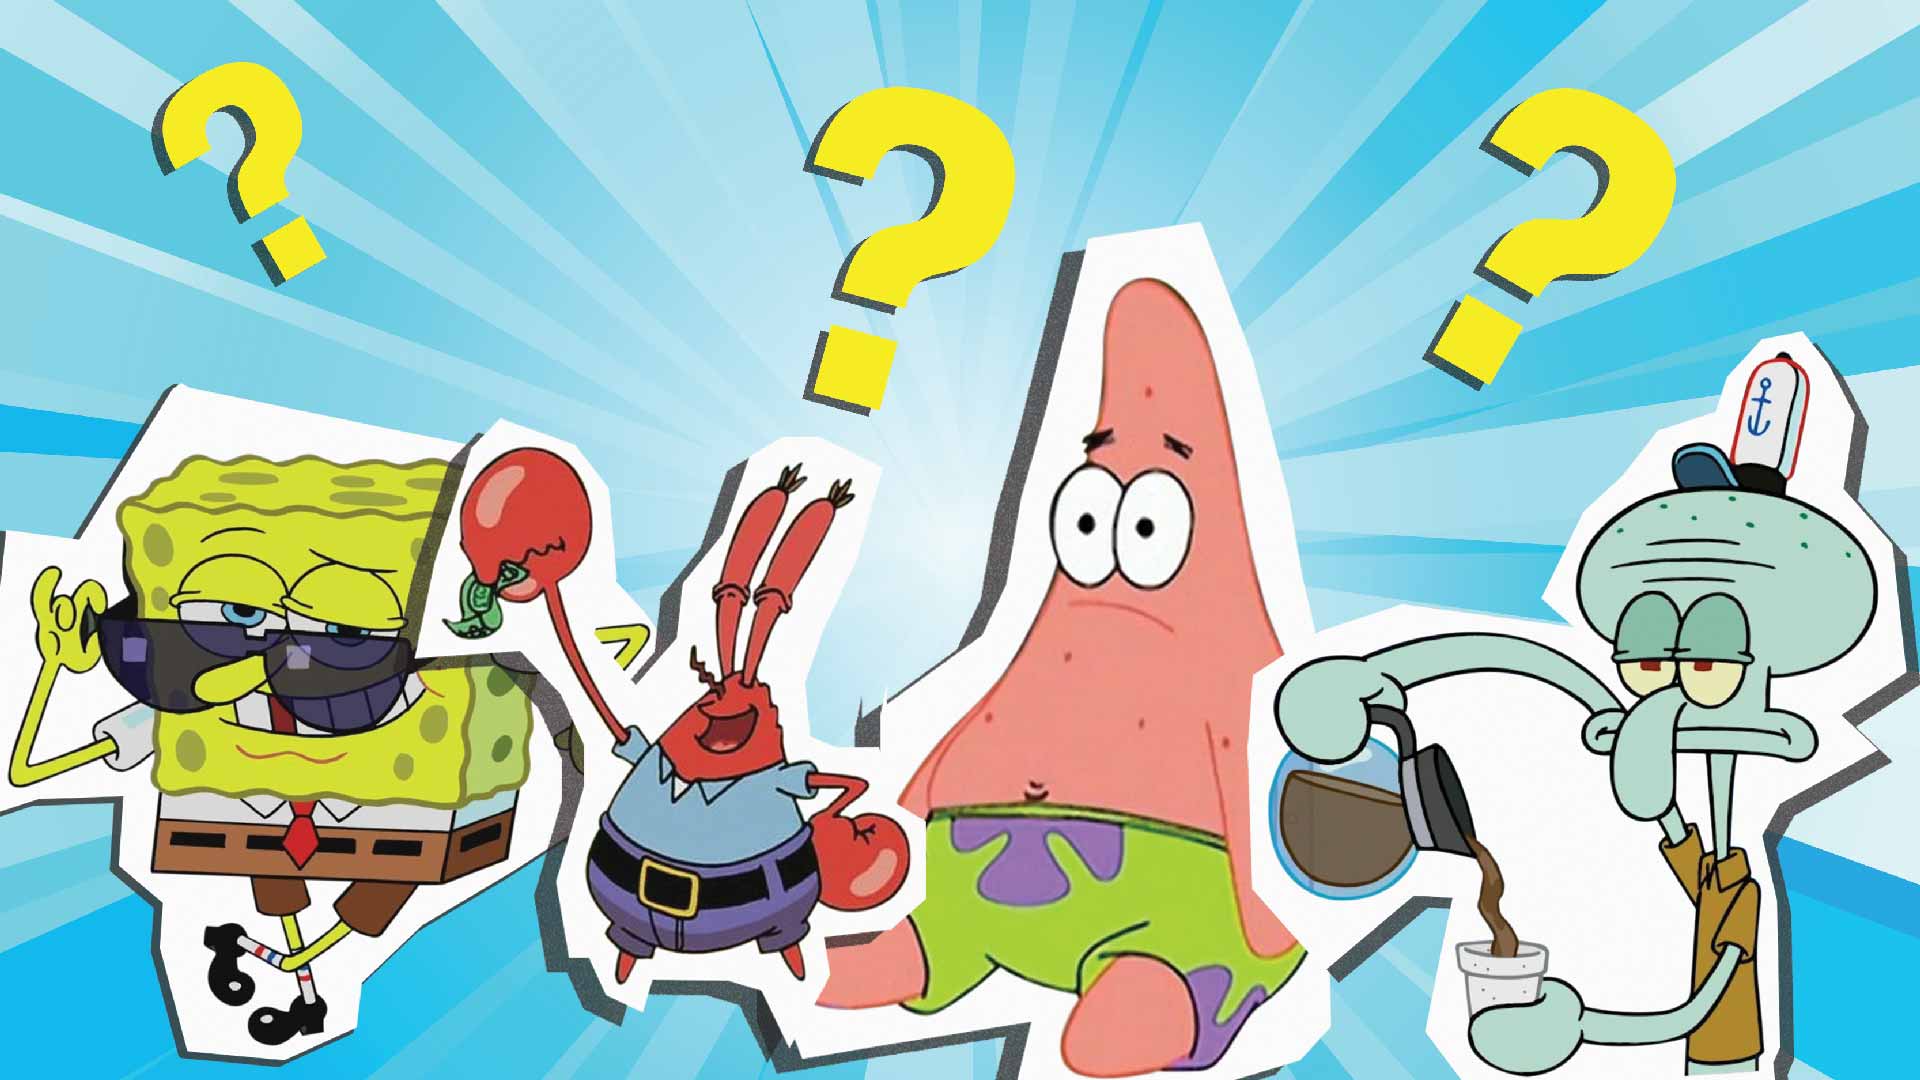 how well do you know spongebob quiz